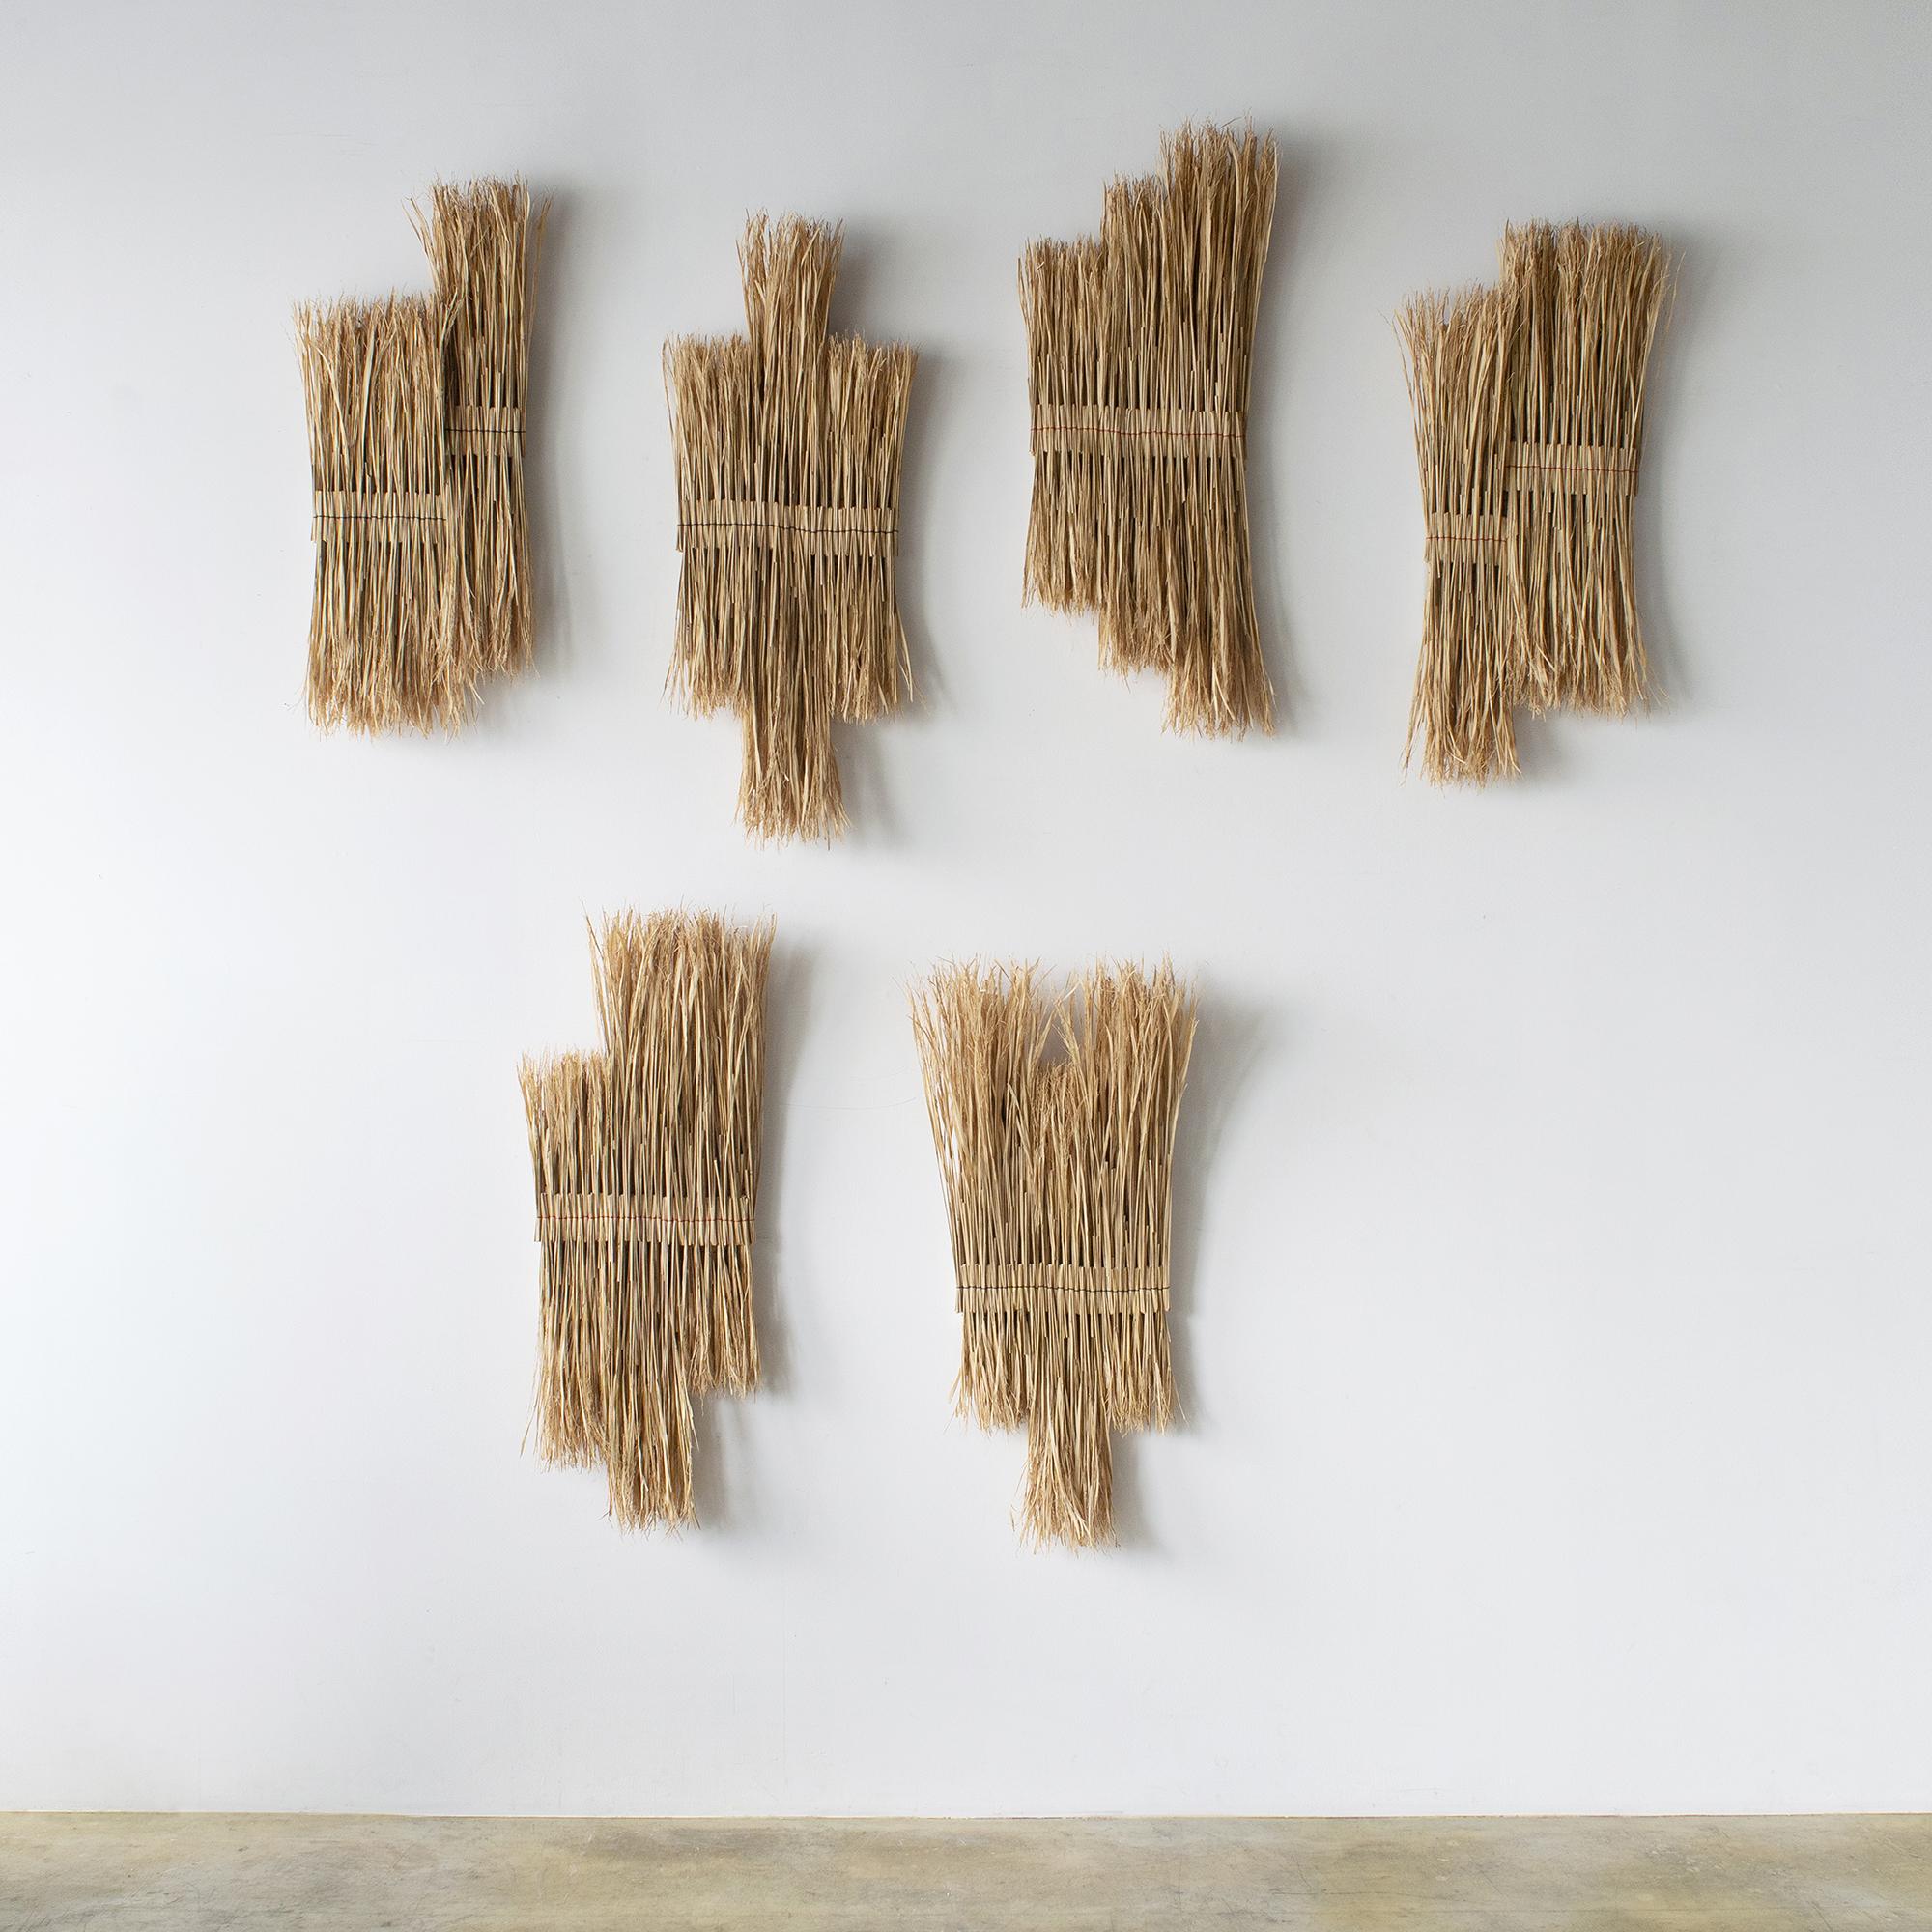 Organic Modern ARKO Wall Art16 Contemporary Art Japanese Craft Rice Straw Art Wall Sculpture For Sale